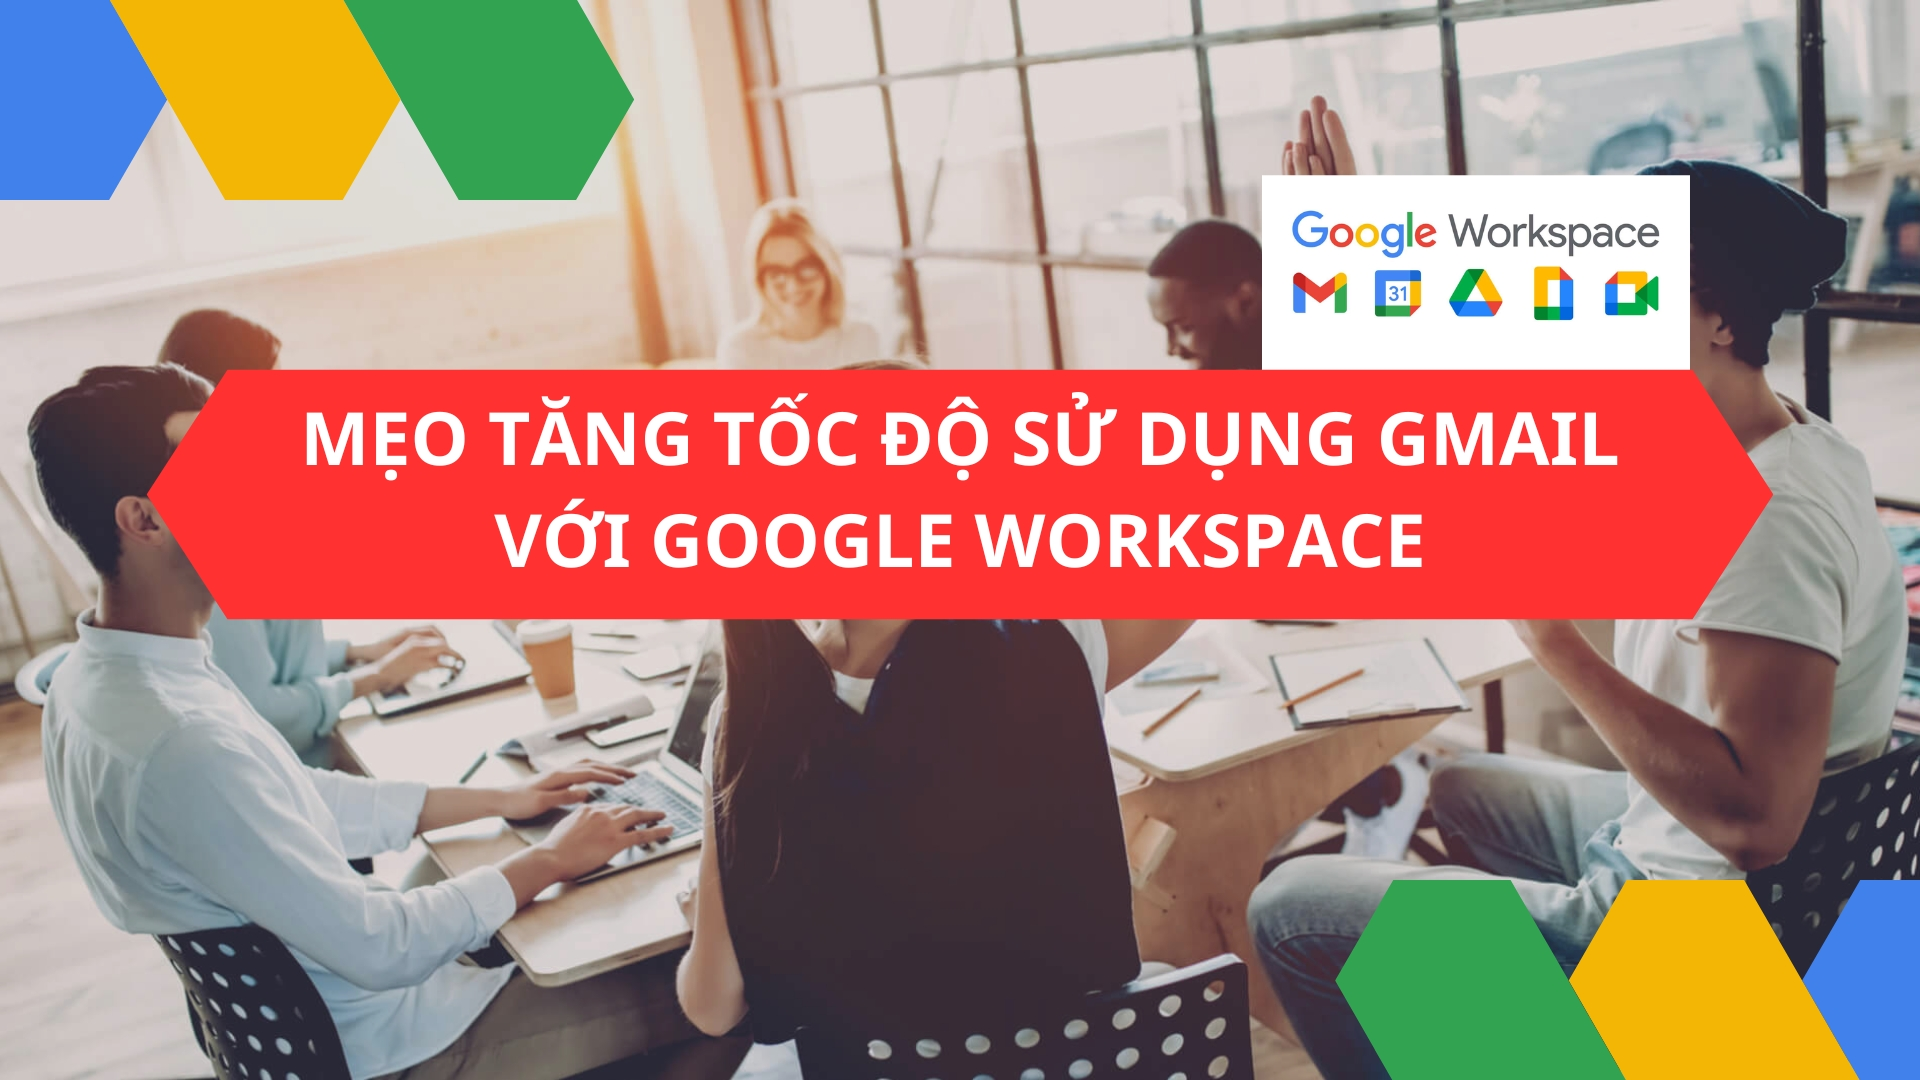 Mẹo tăng tốc độ sử dụng Gmail với Google Workspace